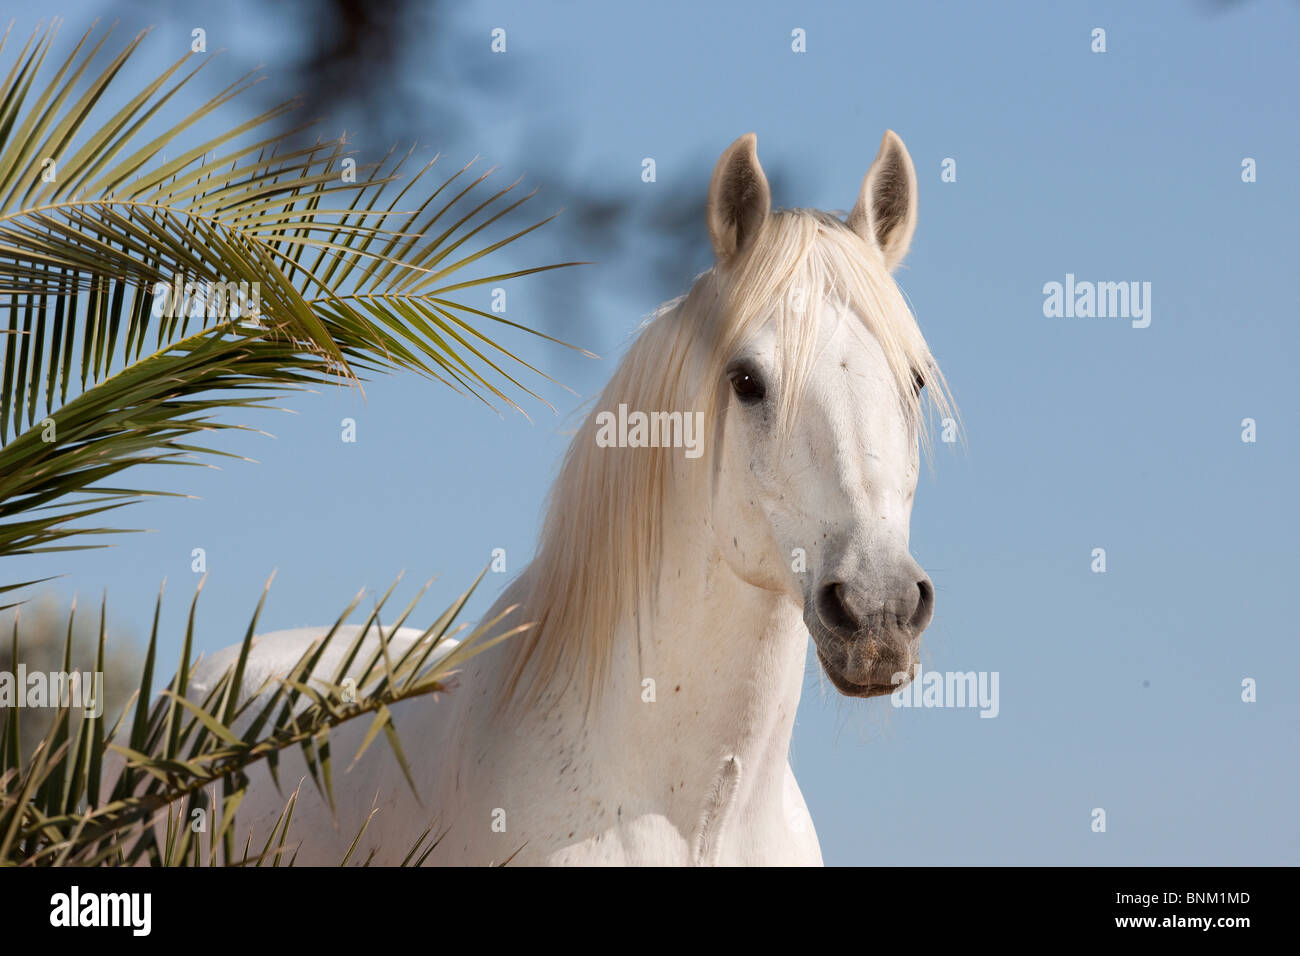 Barb horse portrait Stock Photo